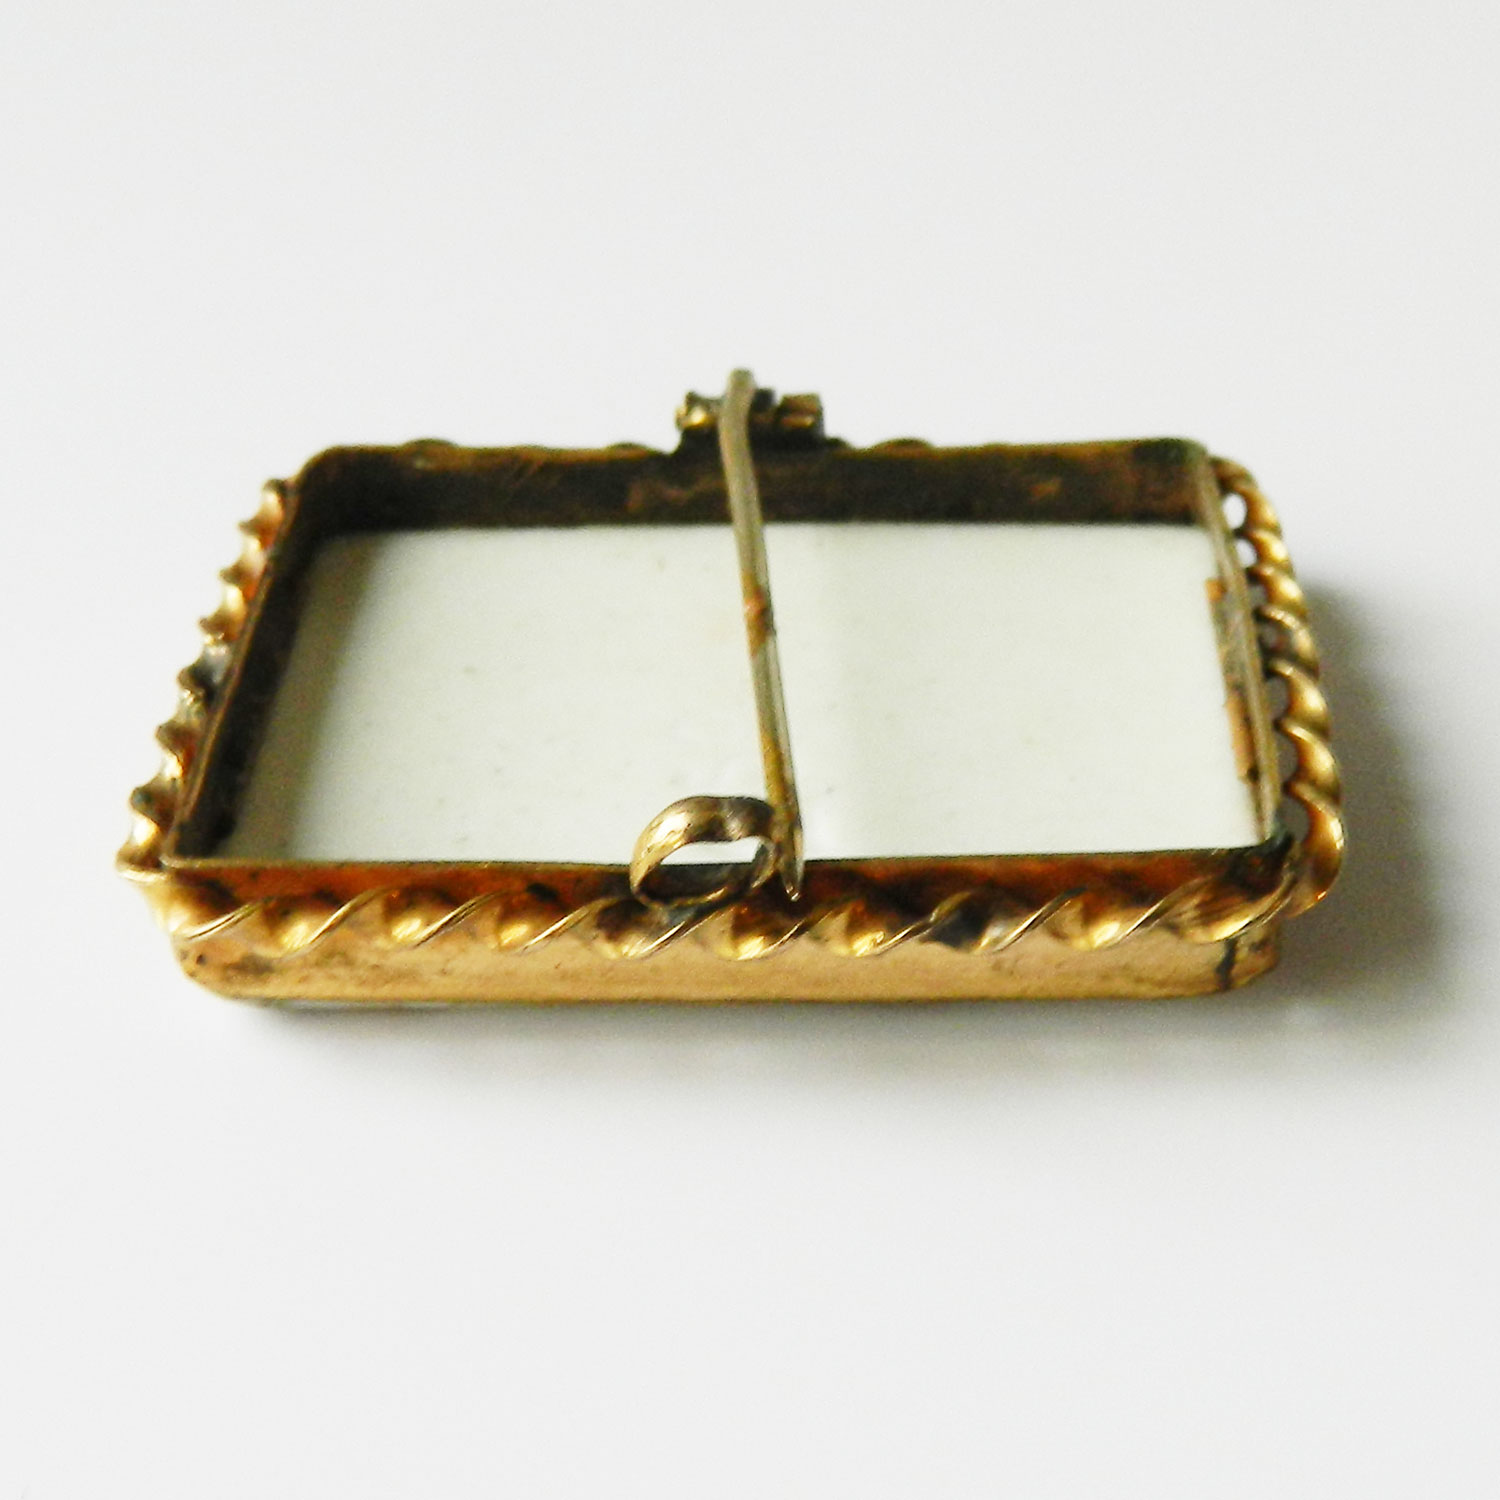 Ceramic cameo brooch